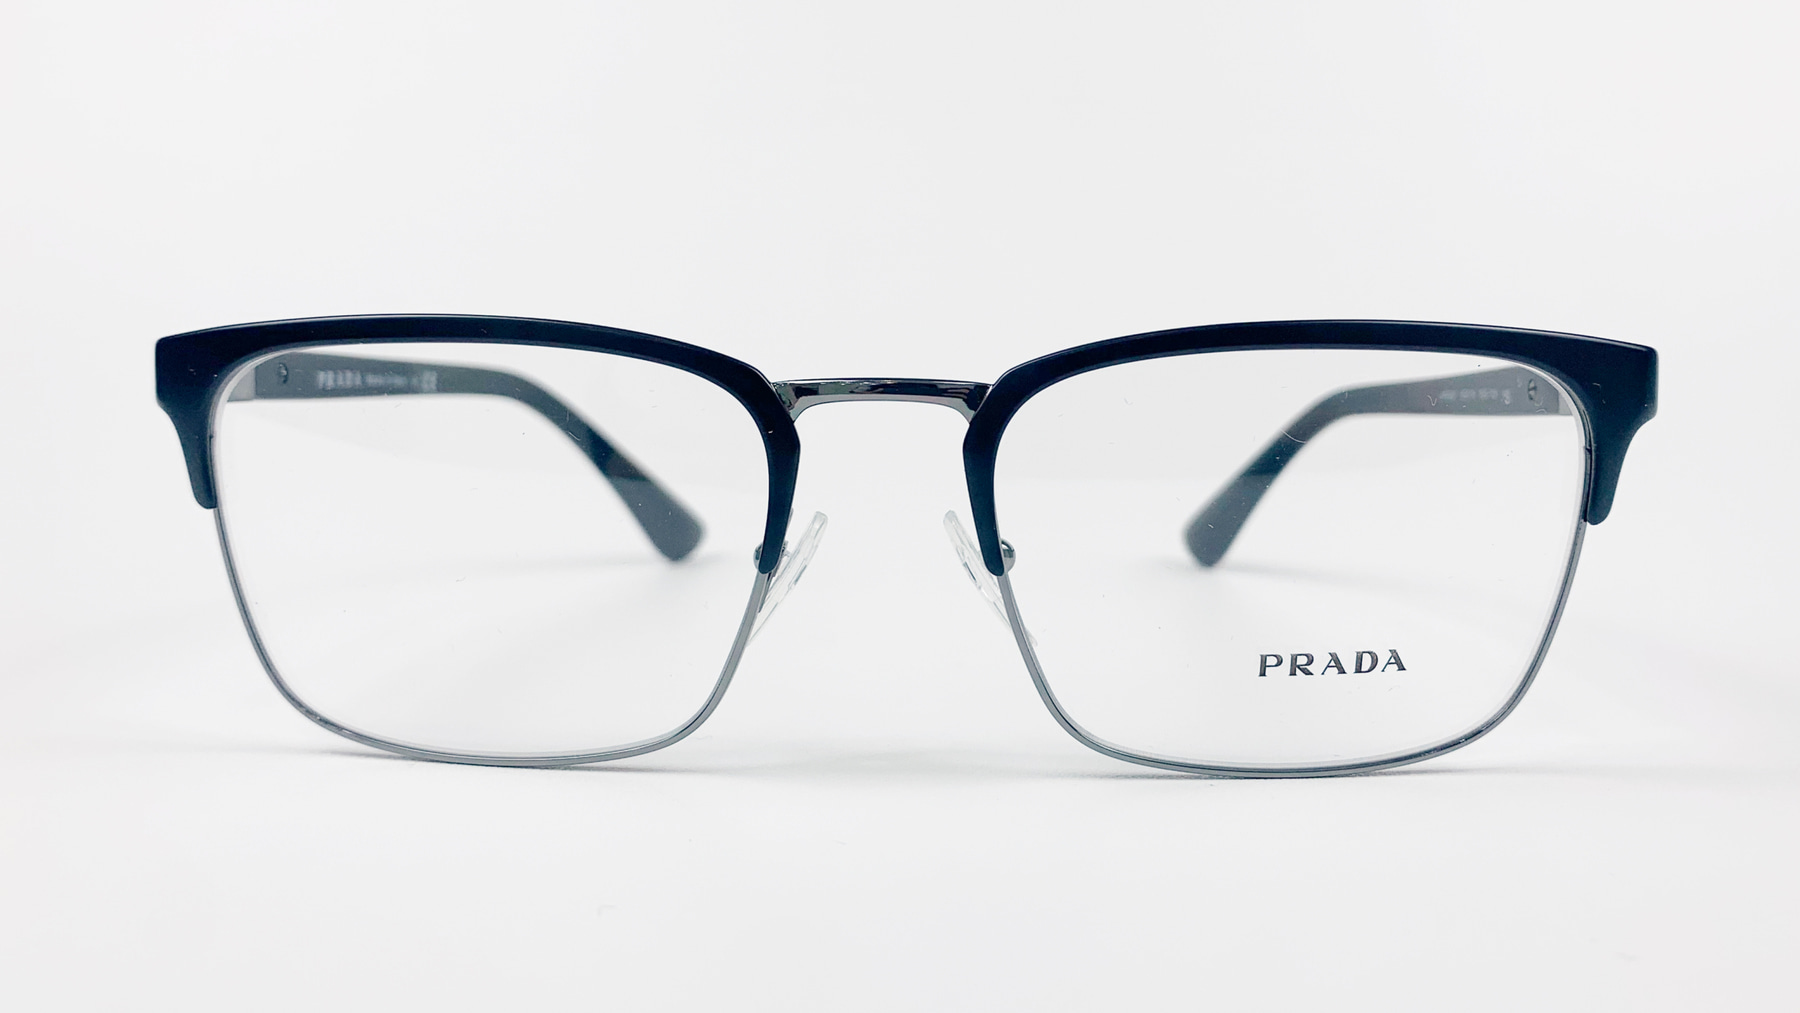 PRADA VPR 54T, Korean glasses, sunglasses, eyeglasses, glasses